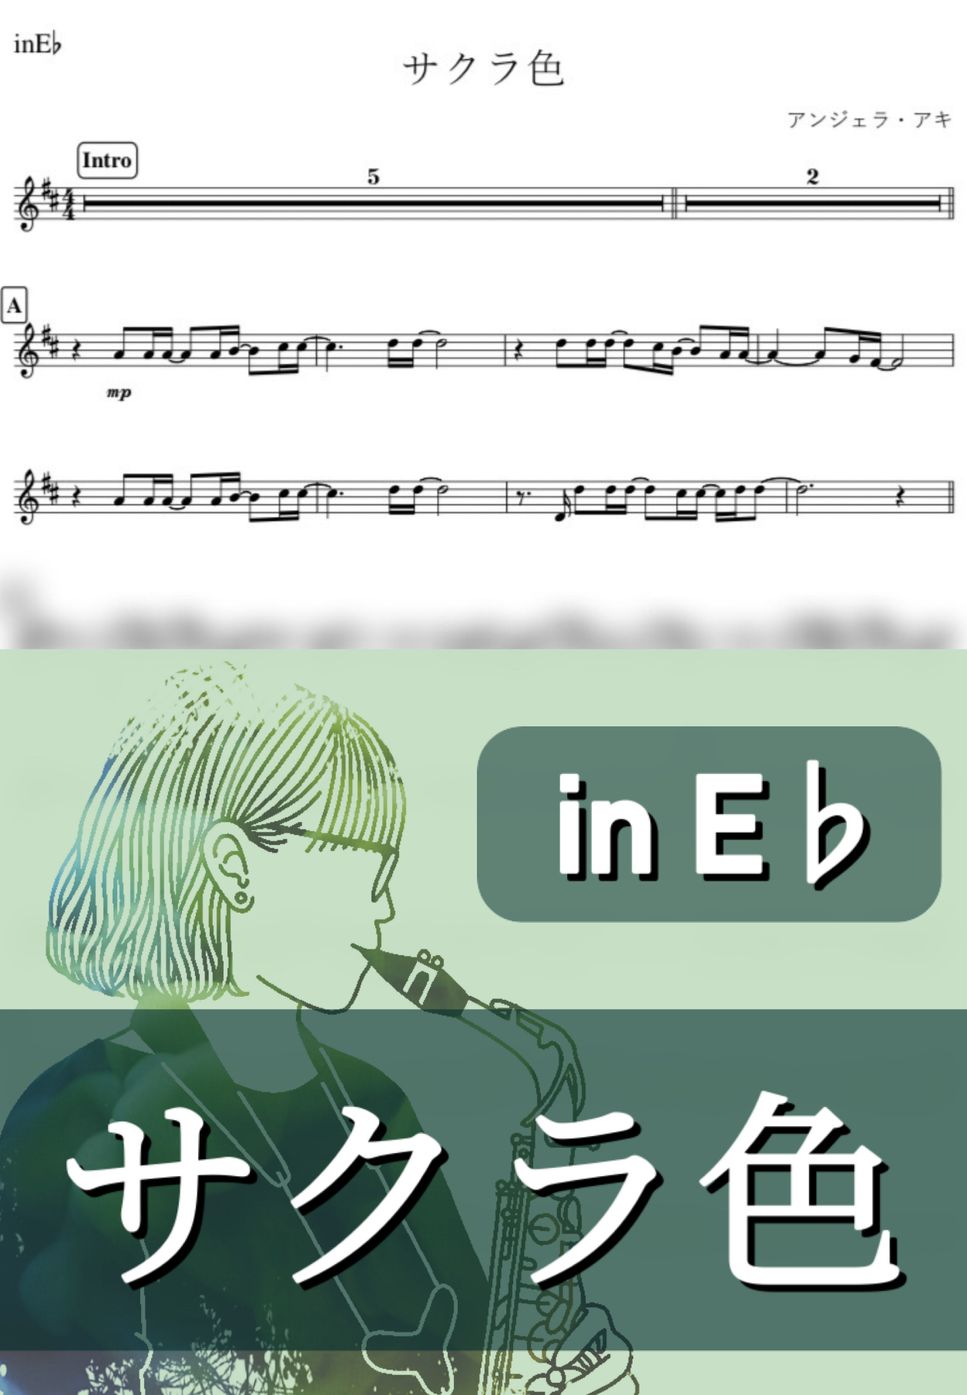 アンジェラ・アキ - サクラ色 (E♭) by kanamusic